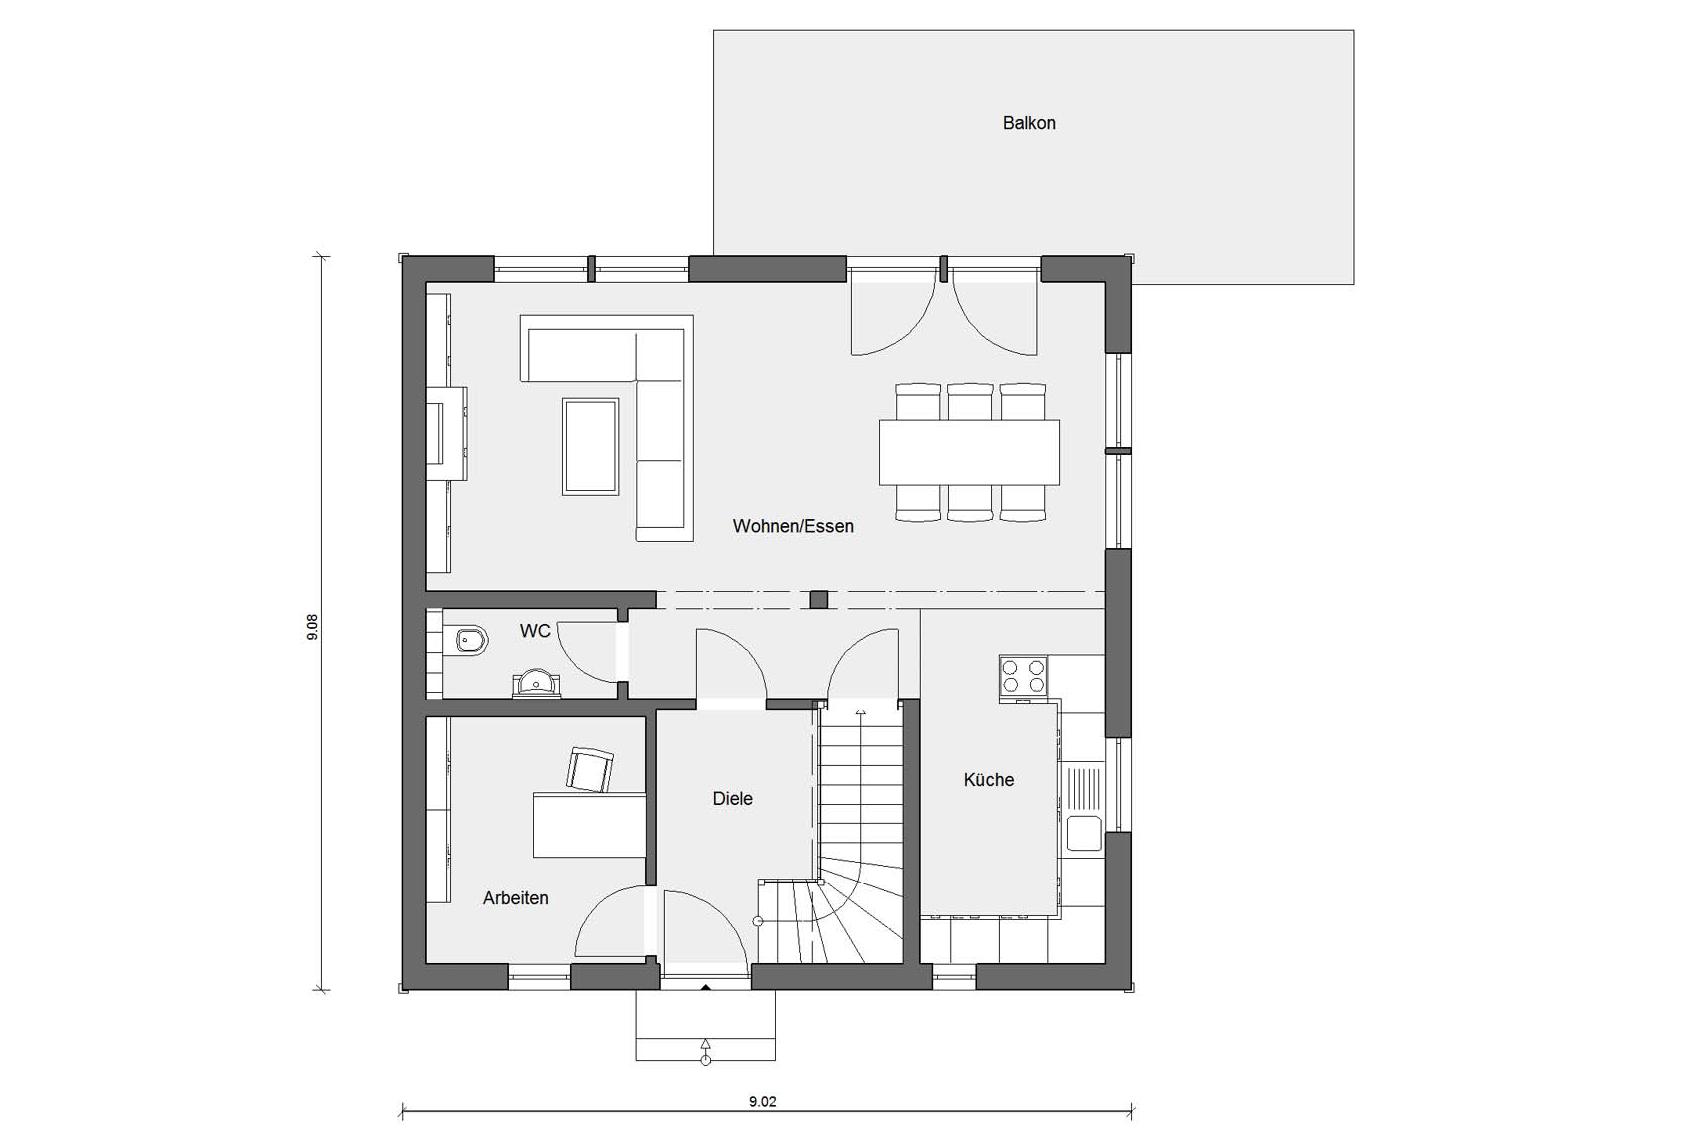 Plan d'étage rez-de-chaussée D 15-134.1 Maison jumelée dans le style suédois